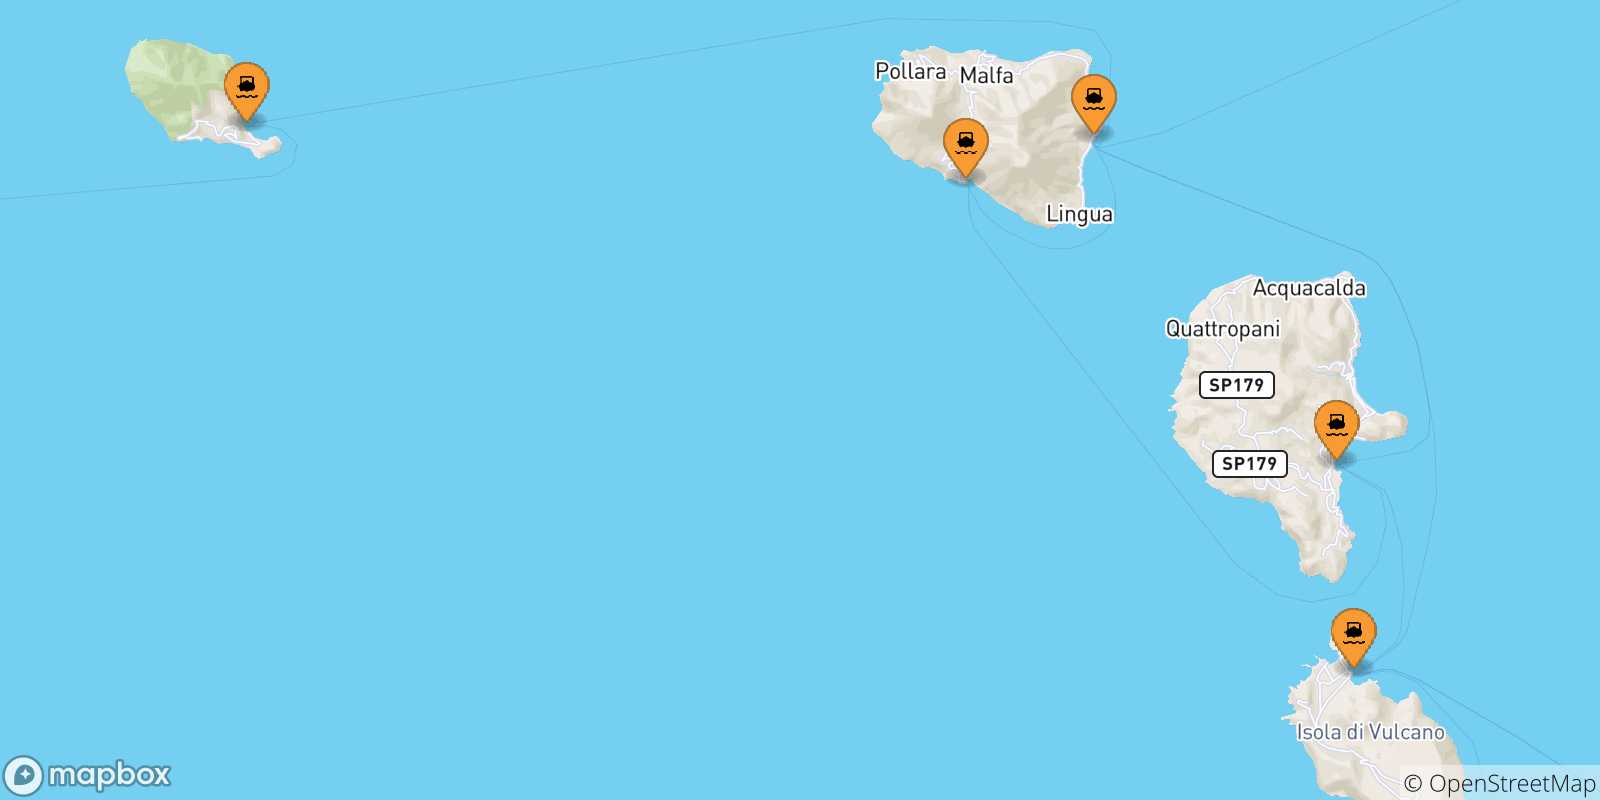 Mappa delle possibili rotte tra le Isole Eolie e Alicudi